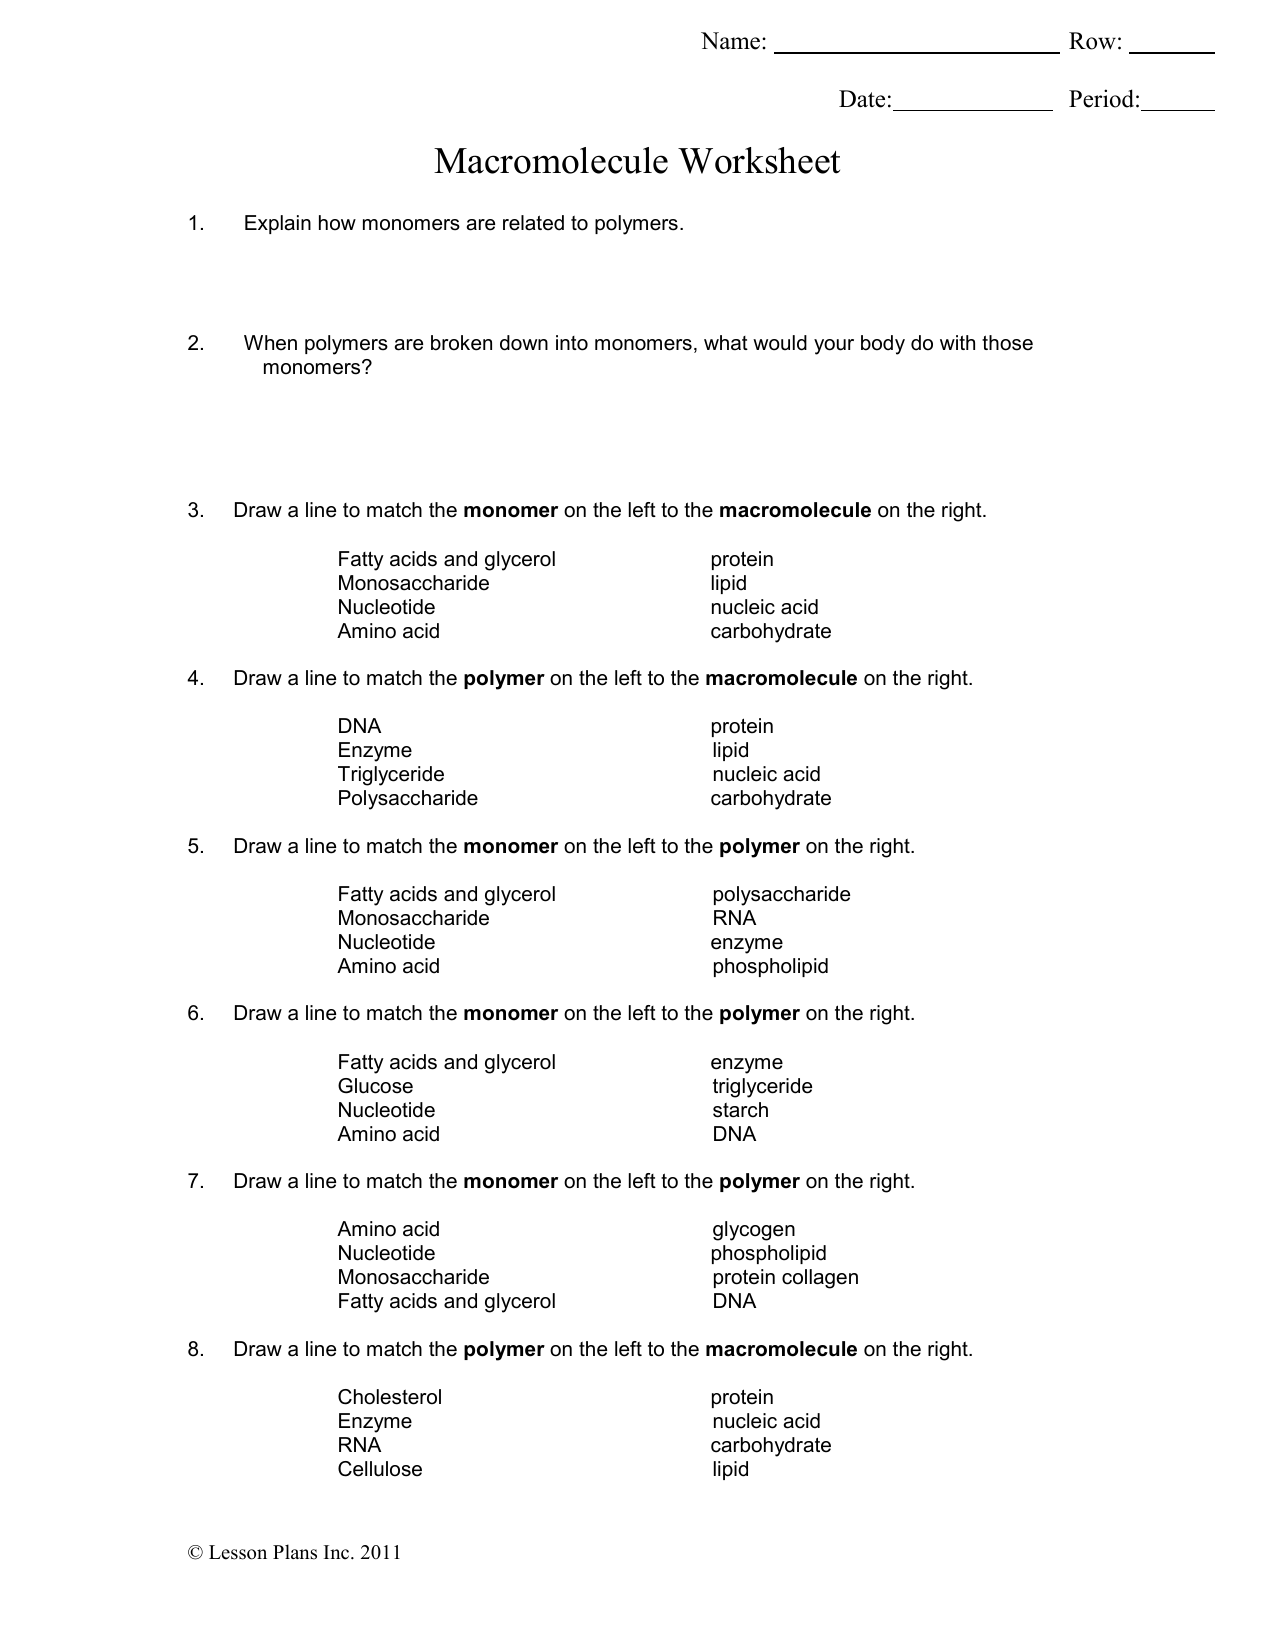 Macromolecule Worksheet Within Macromolecules Worksheet 2 Answers